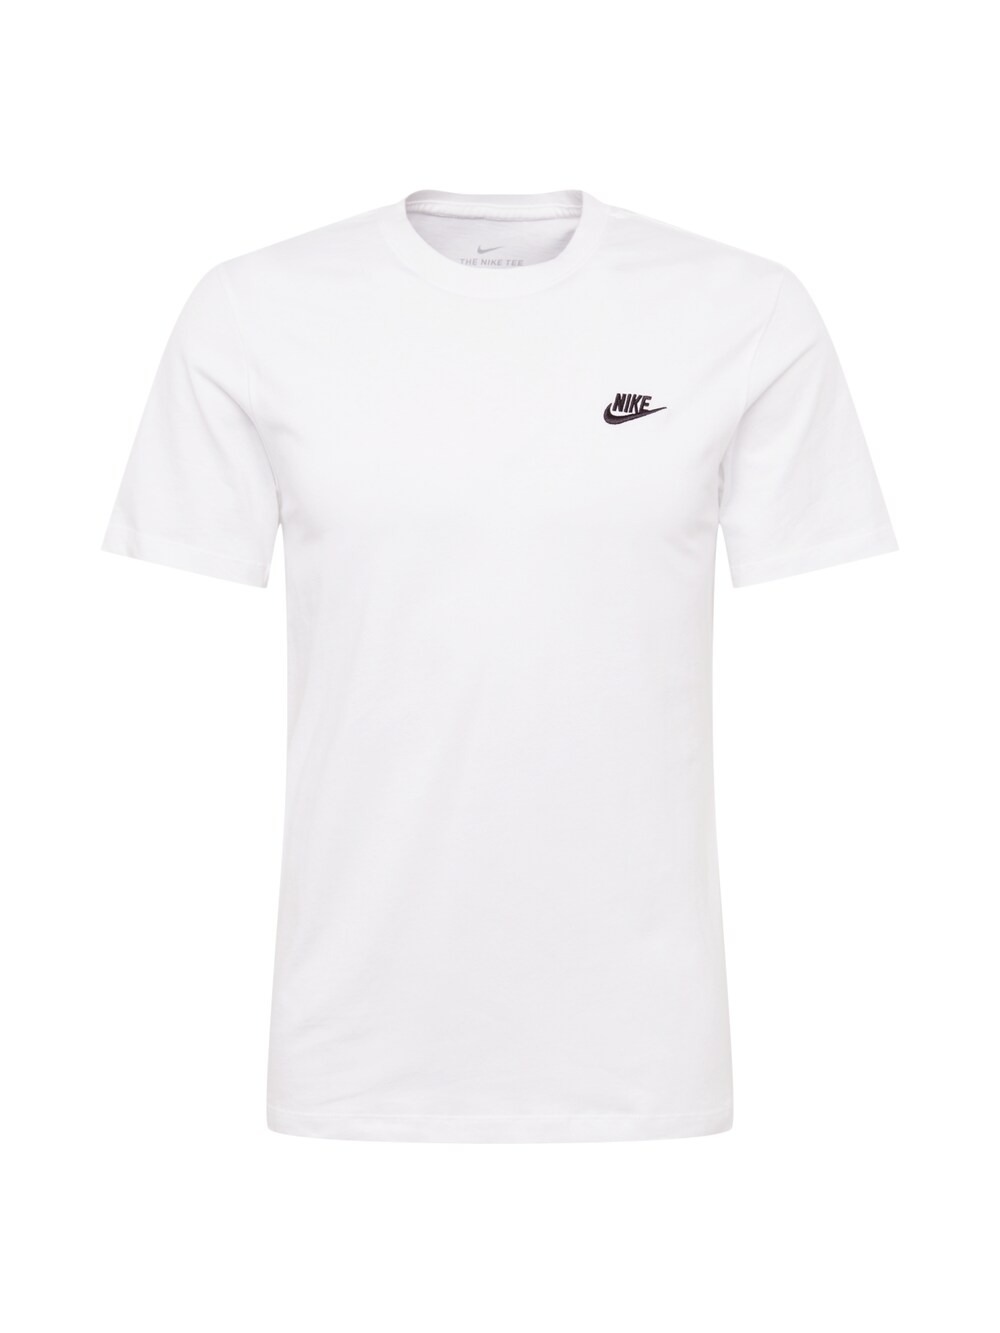 Футболка стандартного кроя Nike Sportswear Club, белый